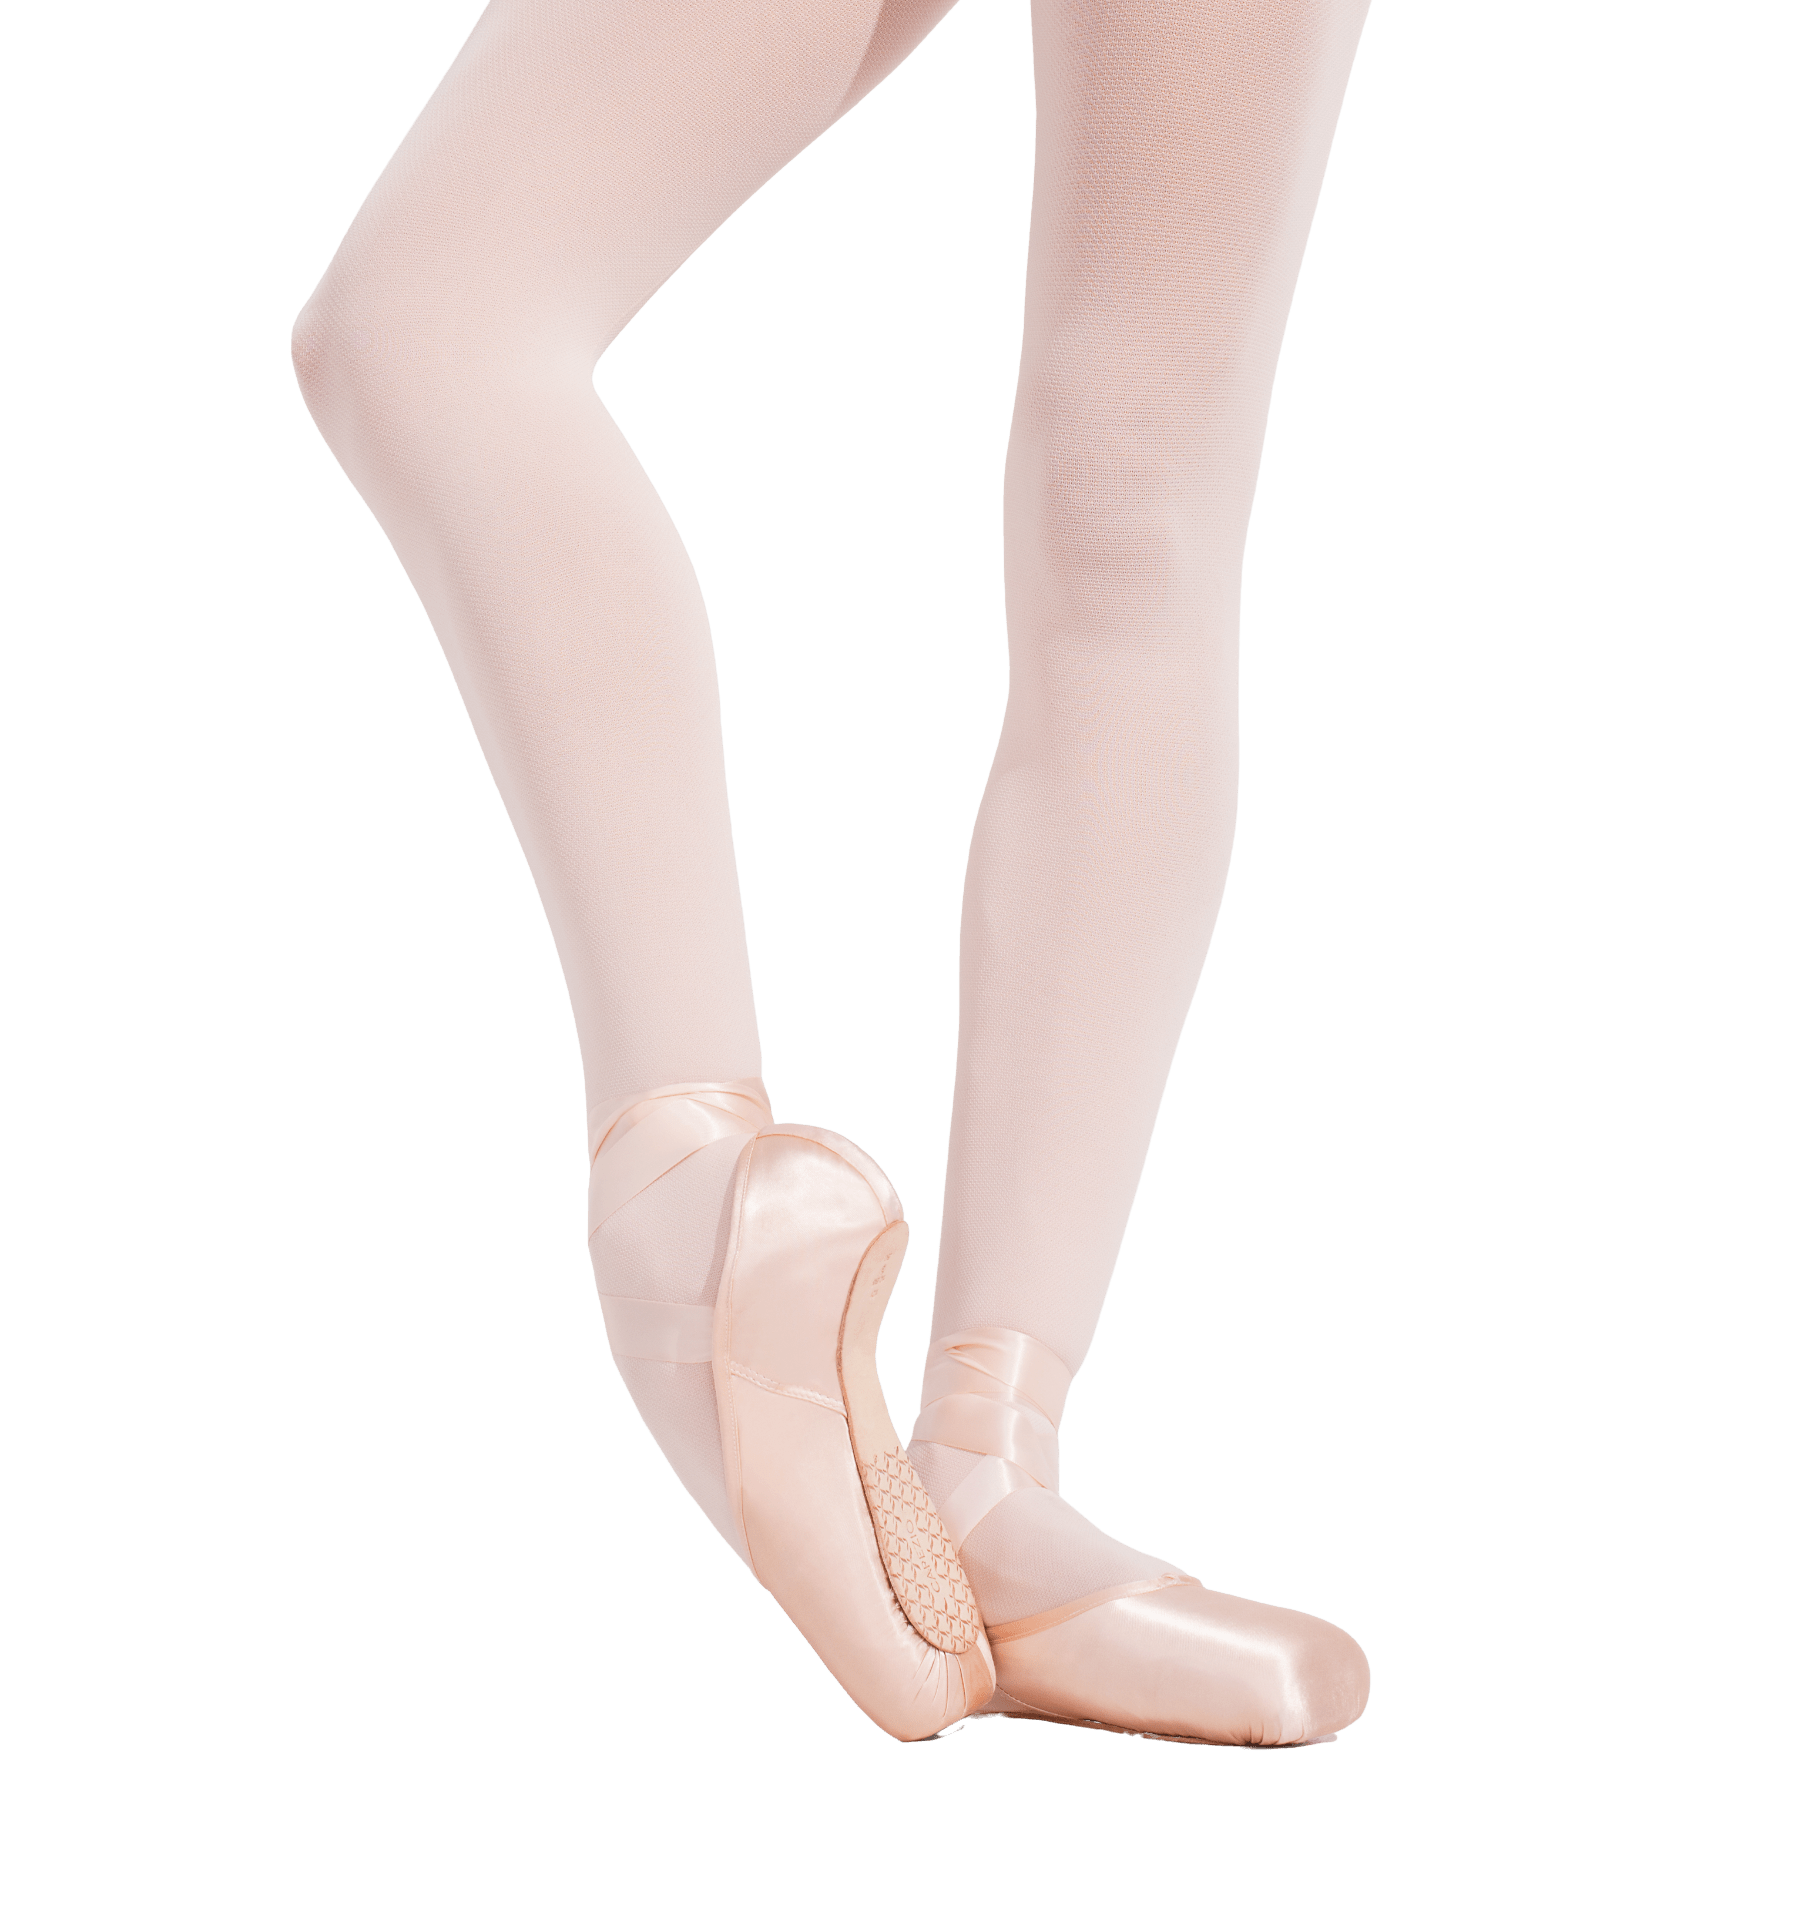 Ballet Shoes Transparent Image